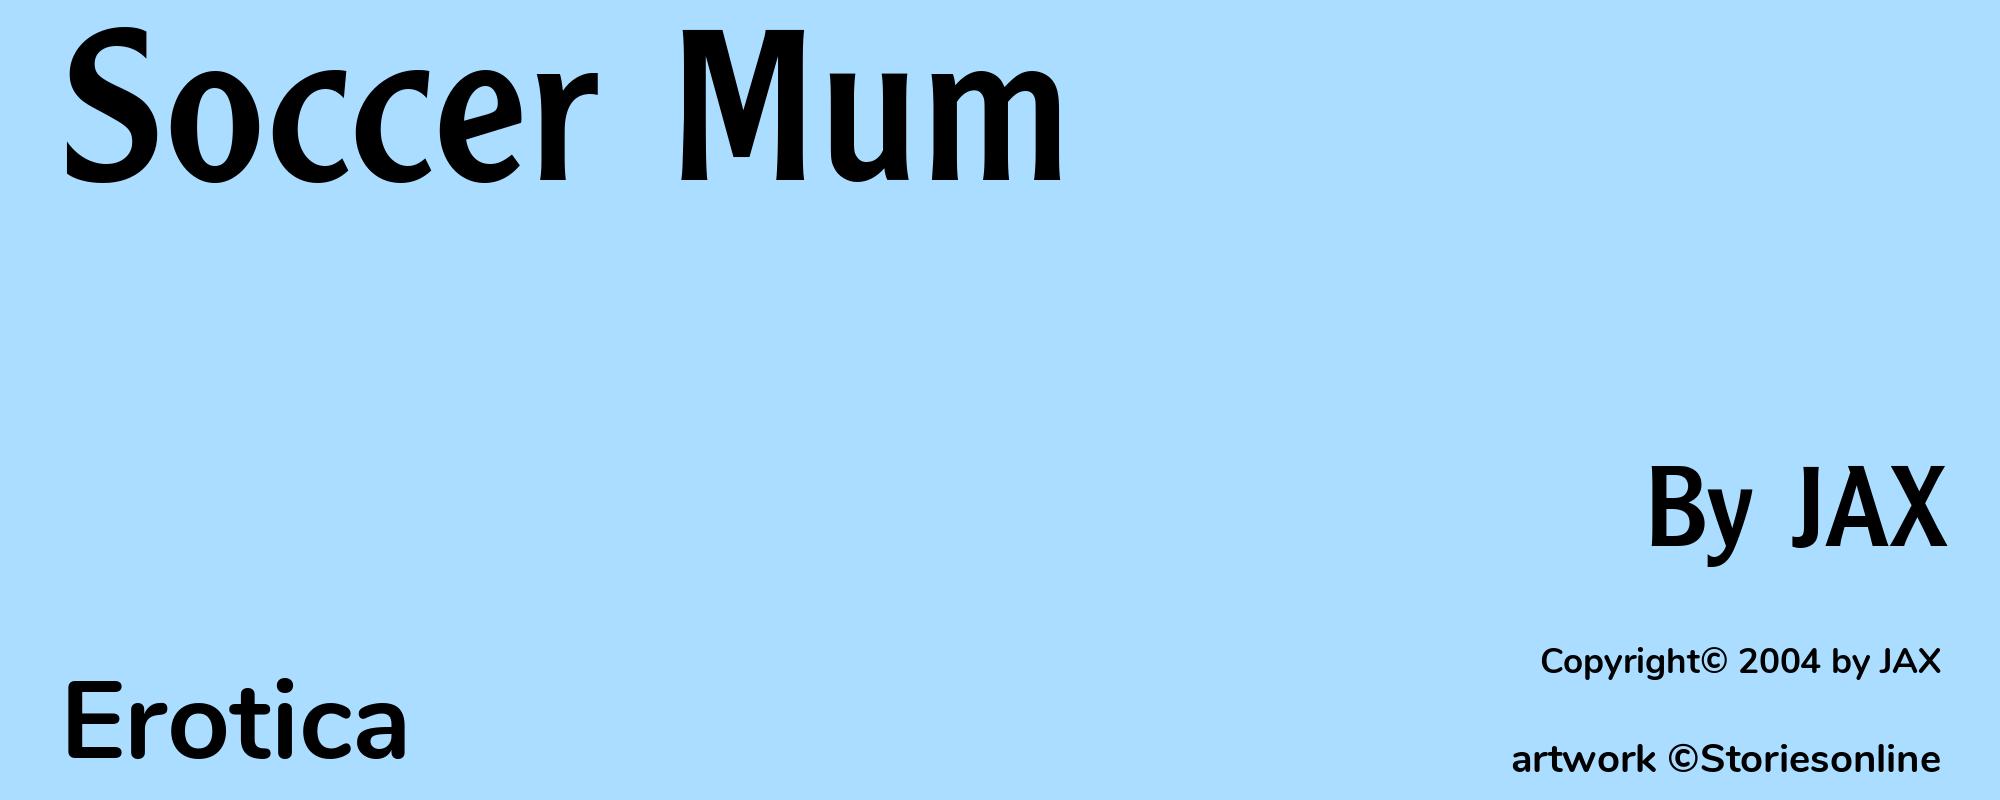 Soccer Mum - Cover